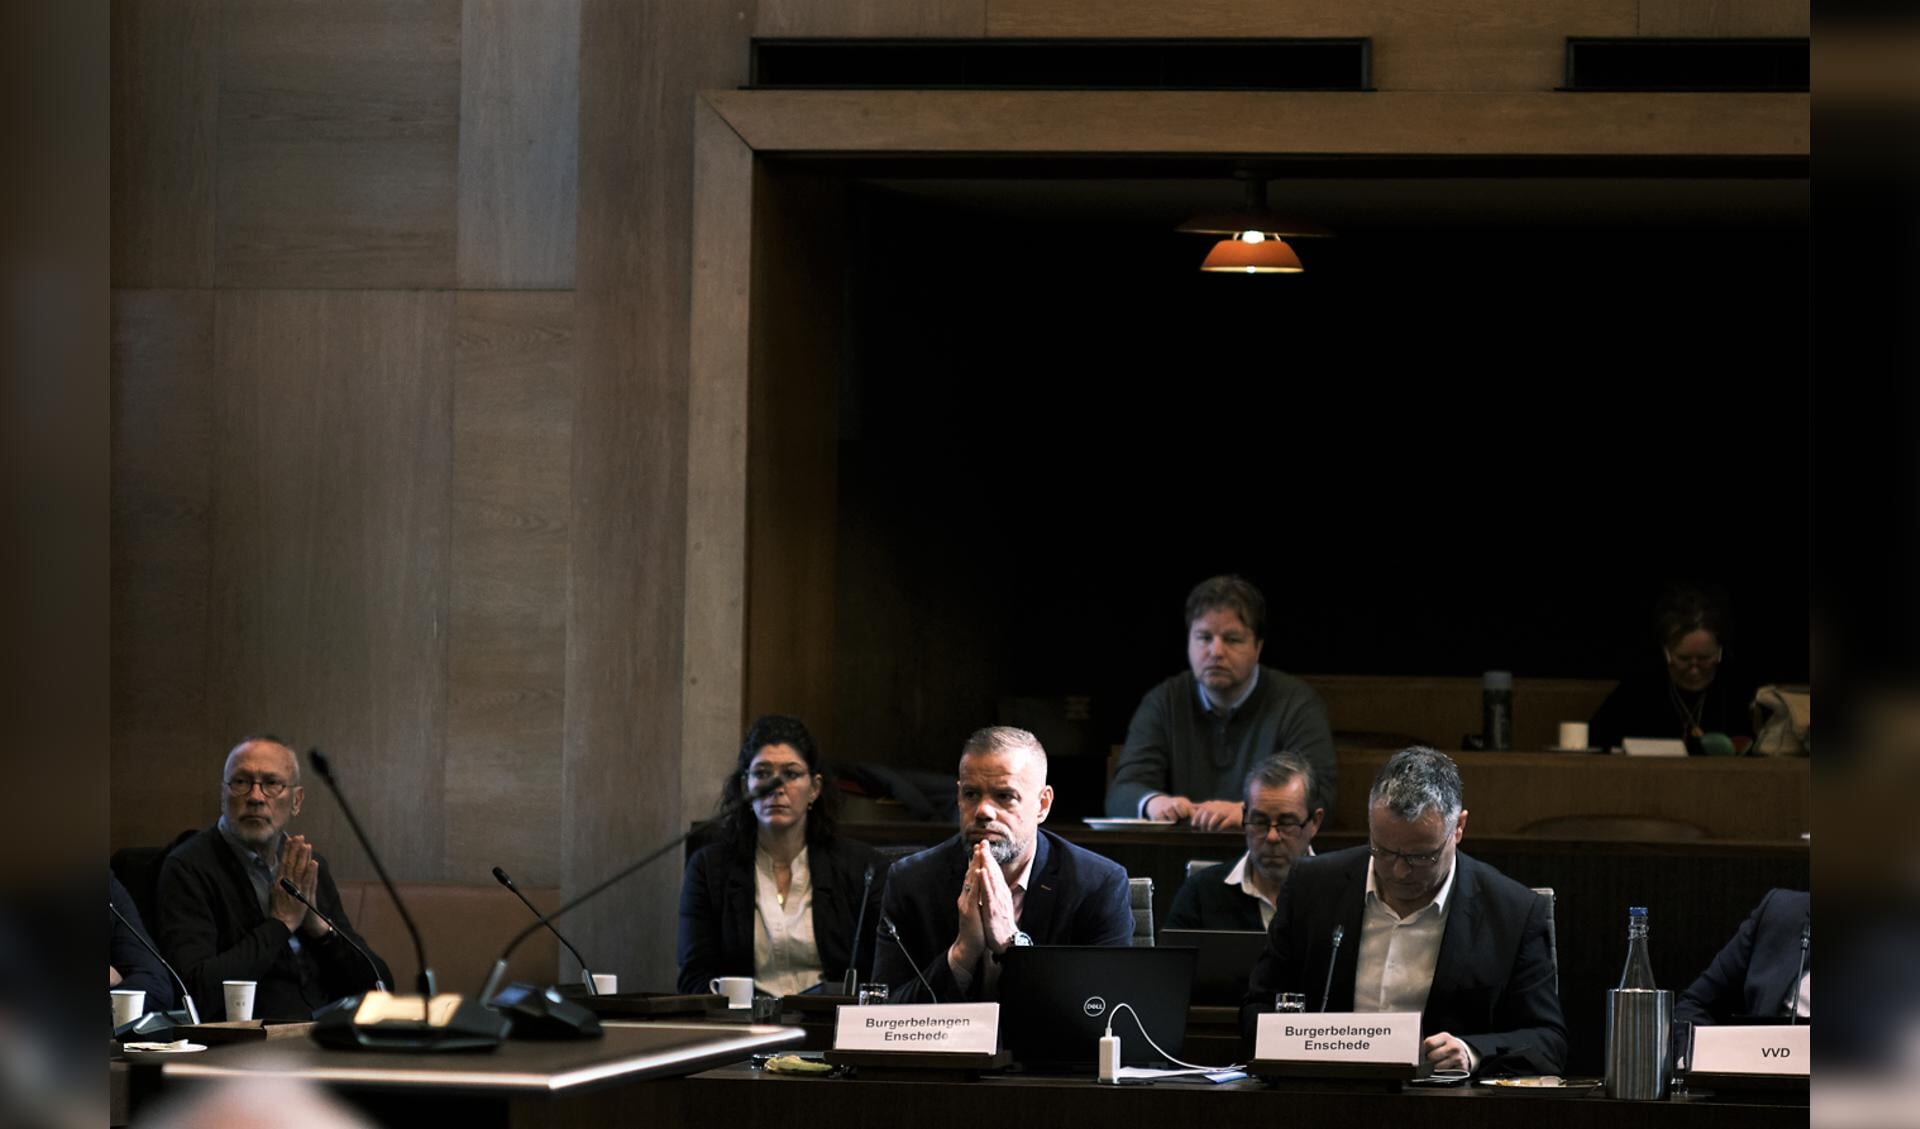 Wethouder en lijsttrekker Niels van den Berg van Burgerbelangen (tweede van links) tijdens het duidingsdebat over de verkiezingsuitslag.